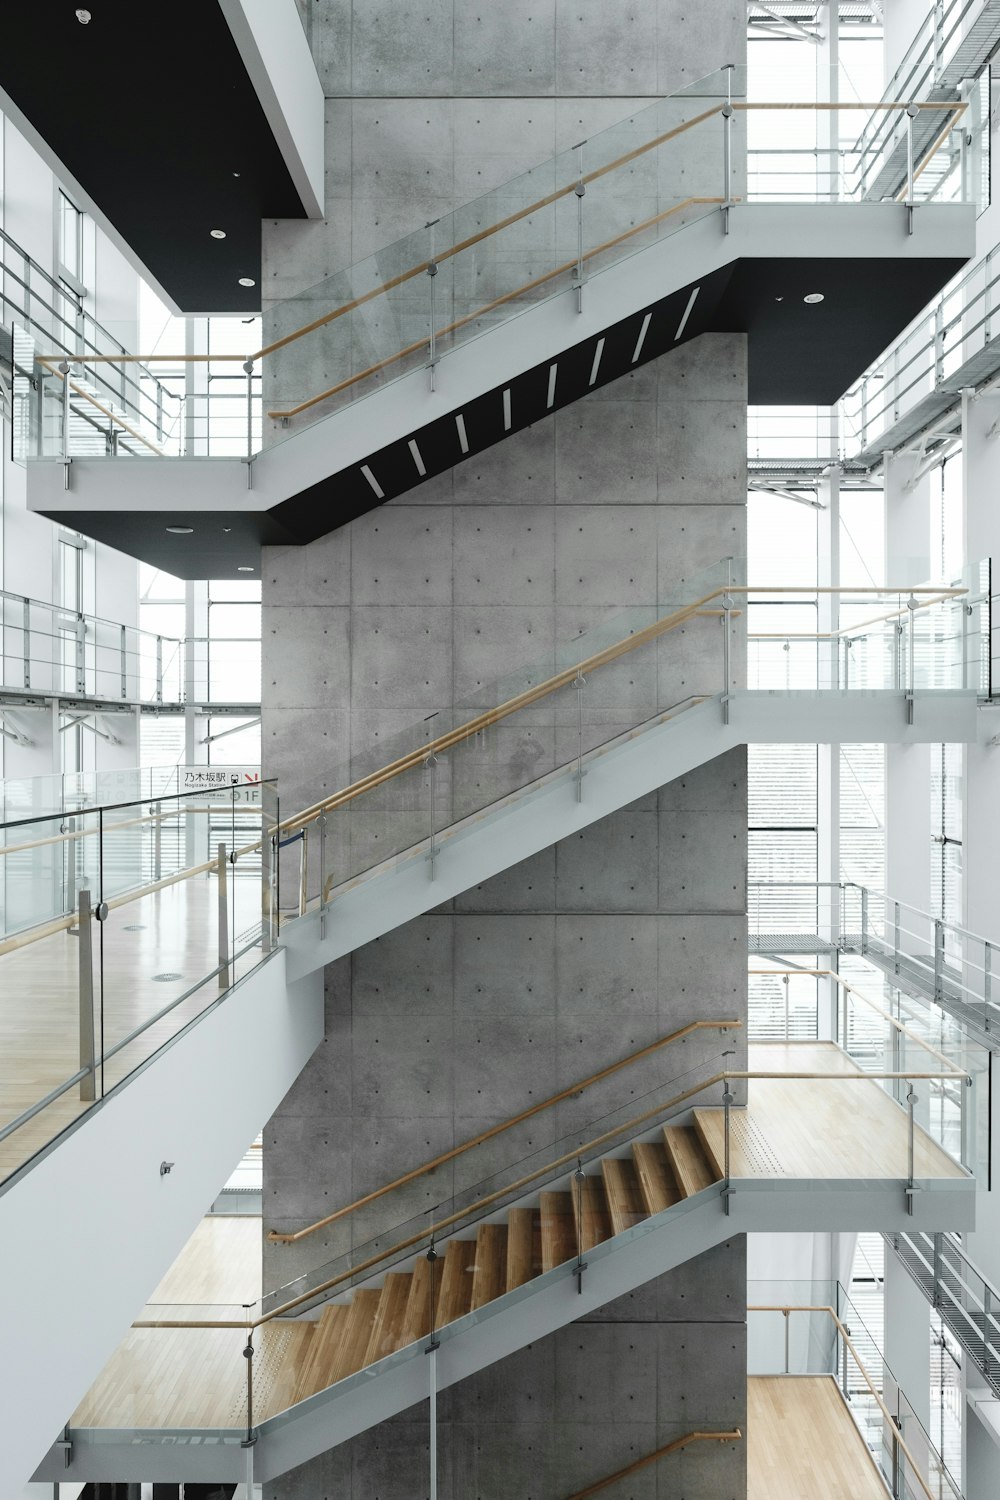 계단이 있는 건물의 건축 사진